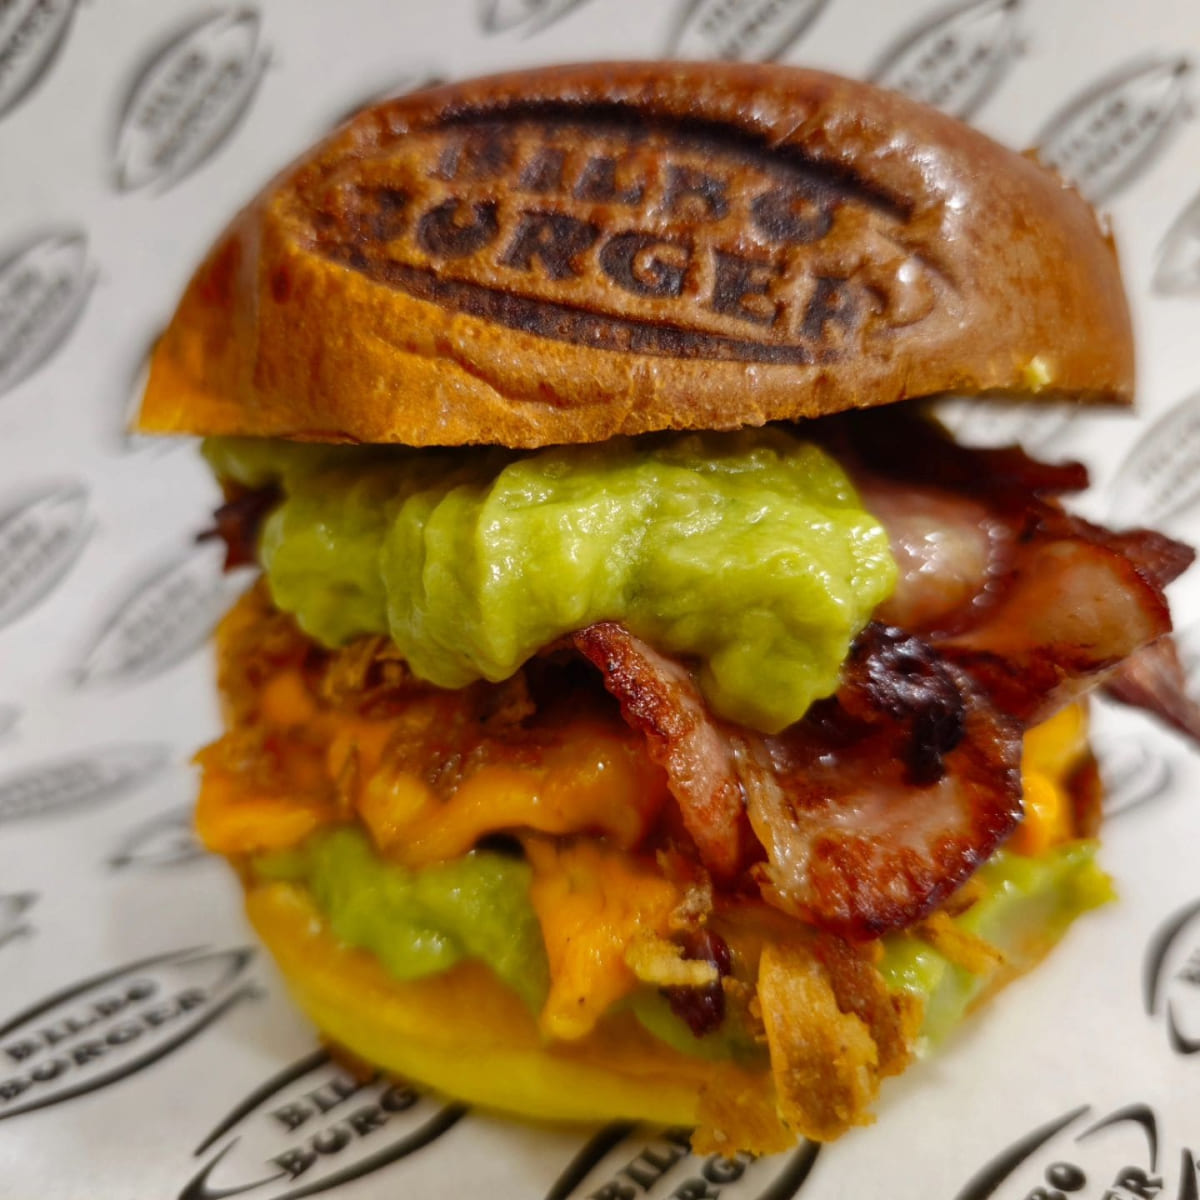 Hamburguesa de Bilboburger con queso fundido, bacon crujiente y guacamole fresco, presentada con el logo de Bilboburger marcado en el pan, sobre papel personalizado de la marca.